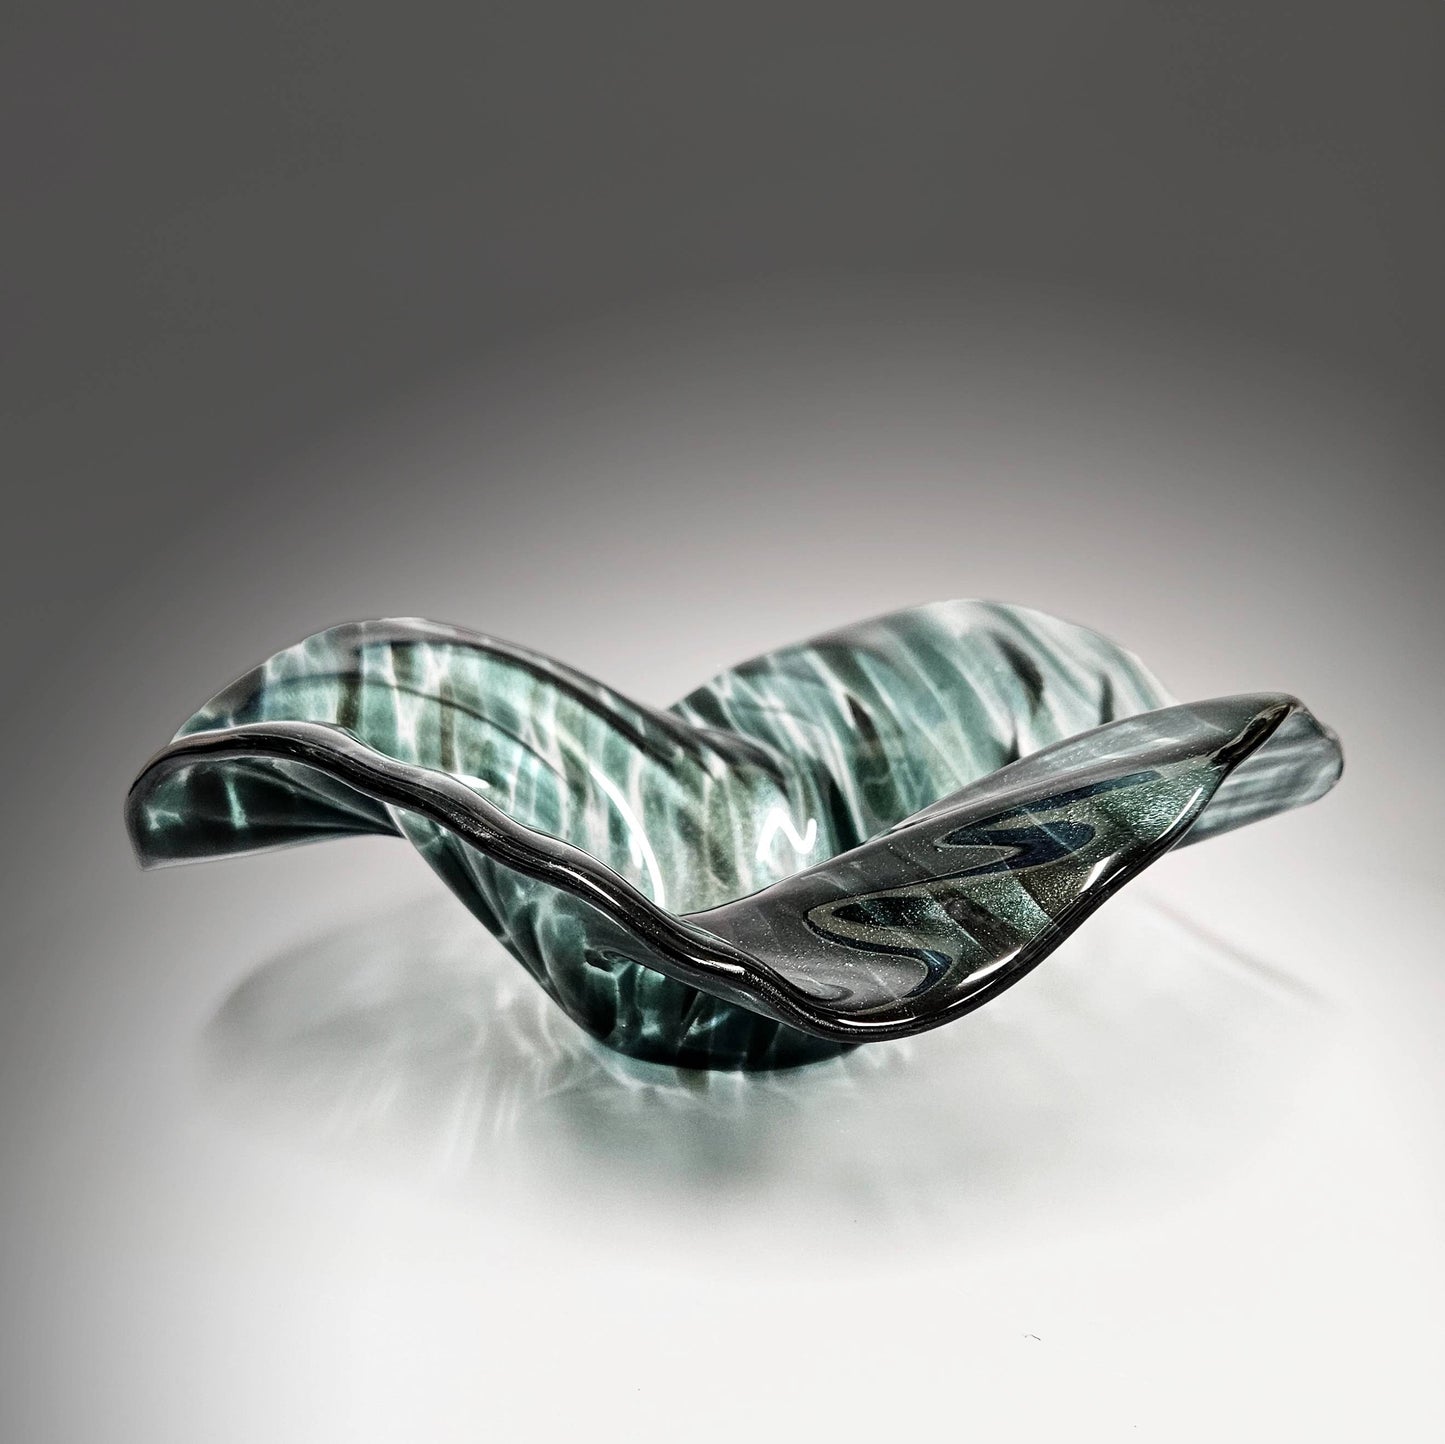 Glass Art Wave Bowl in Dark Teal Bluish Green